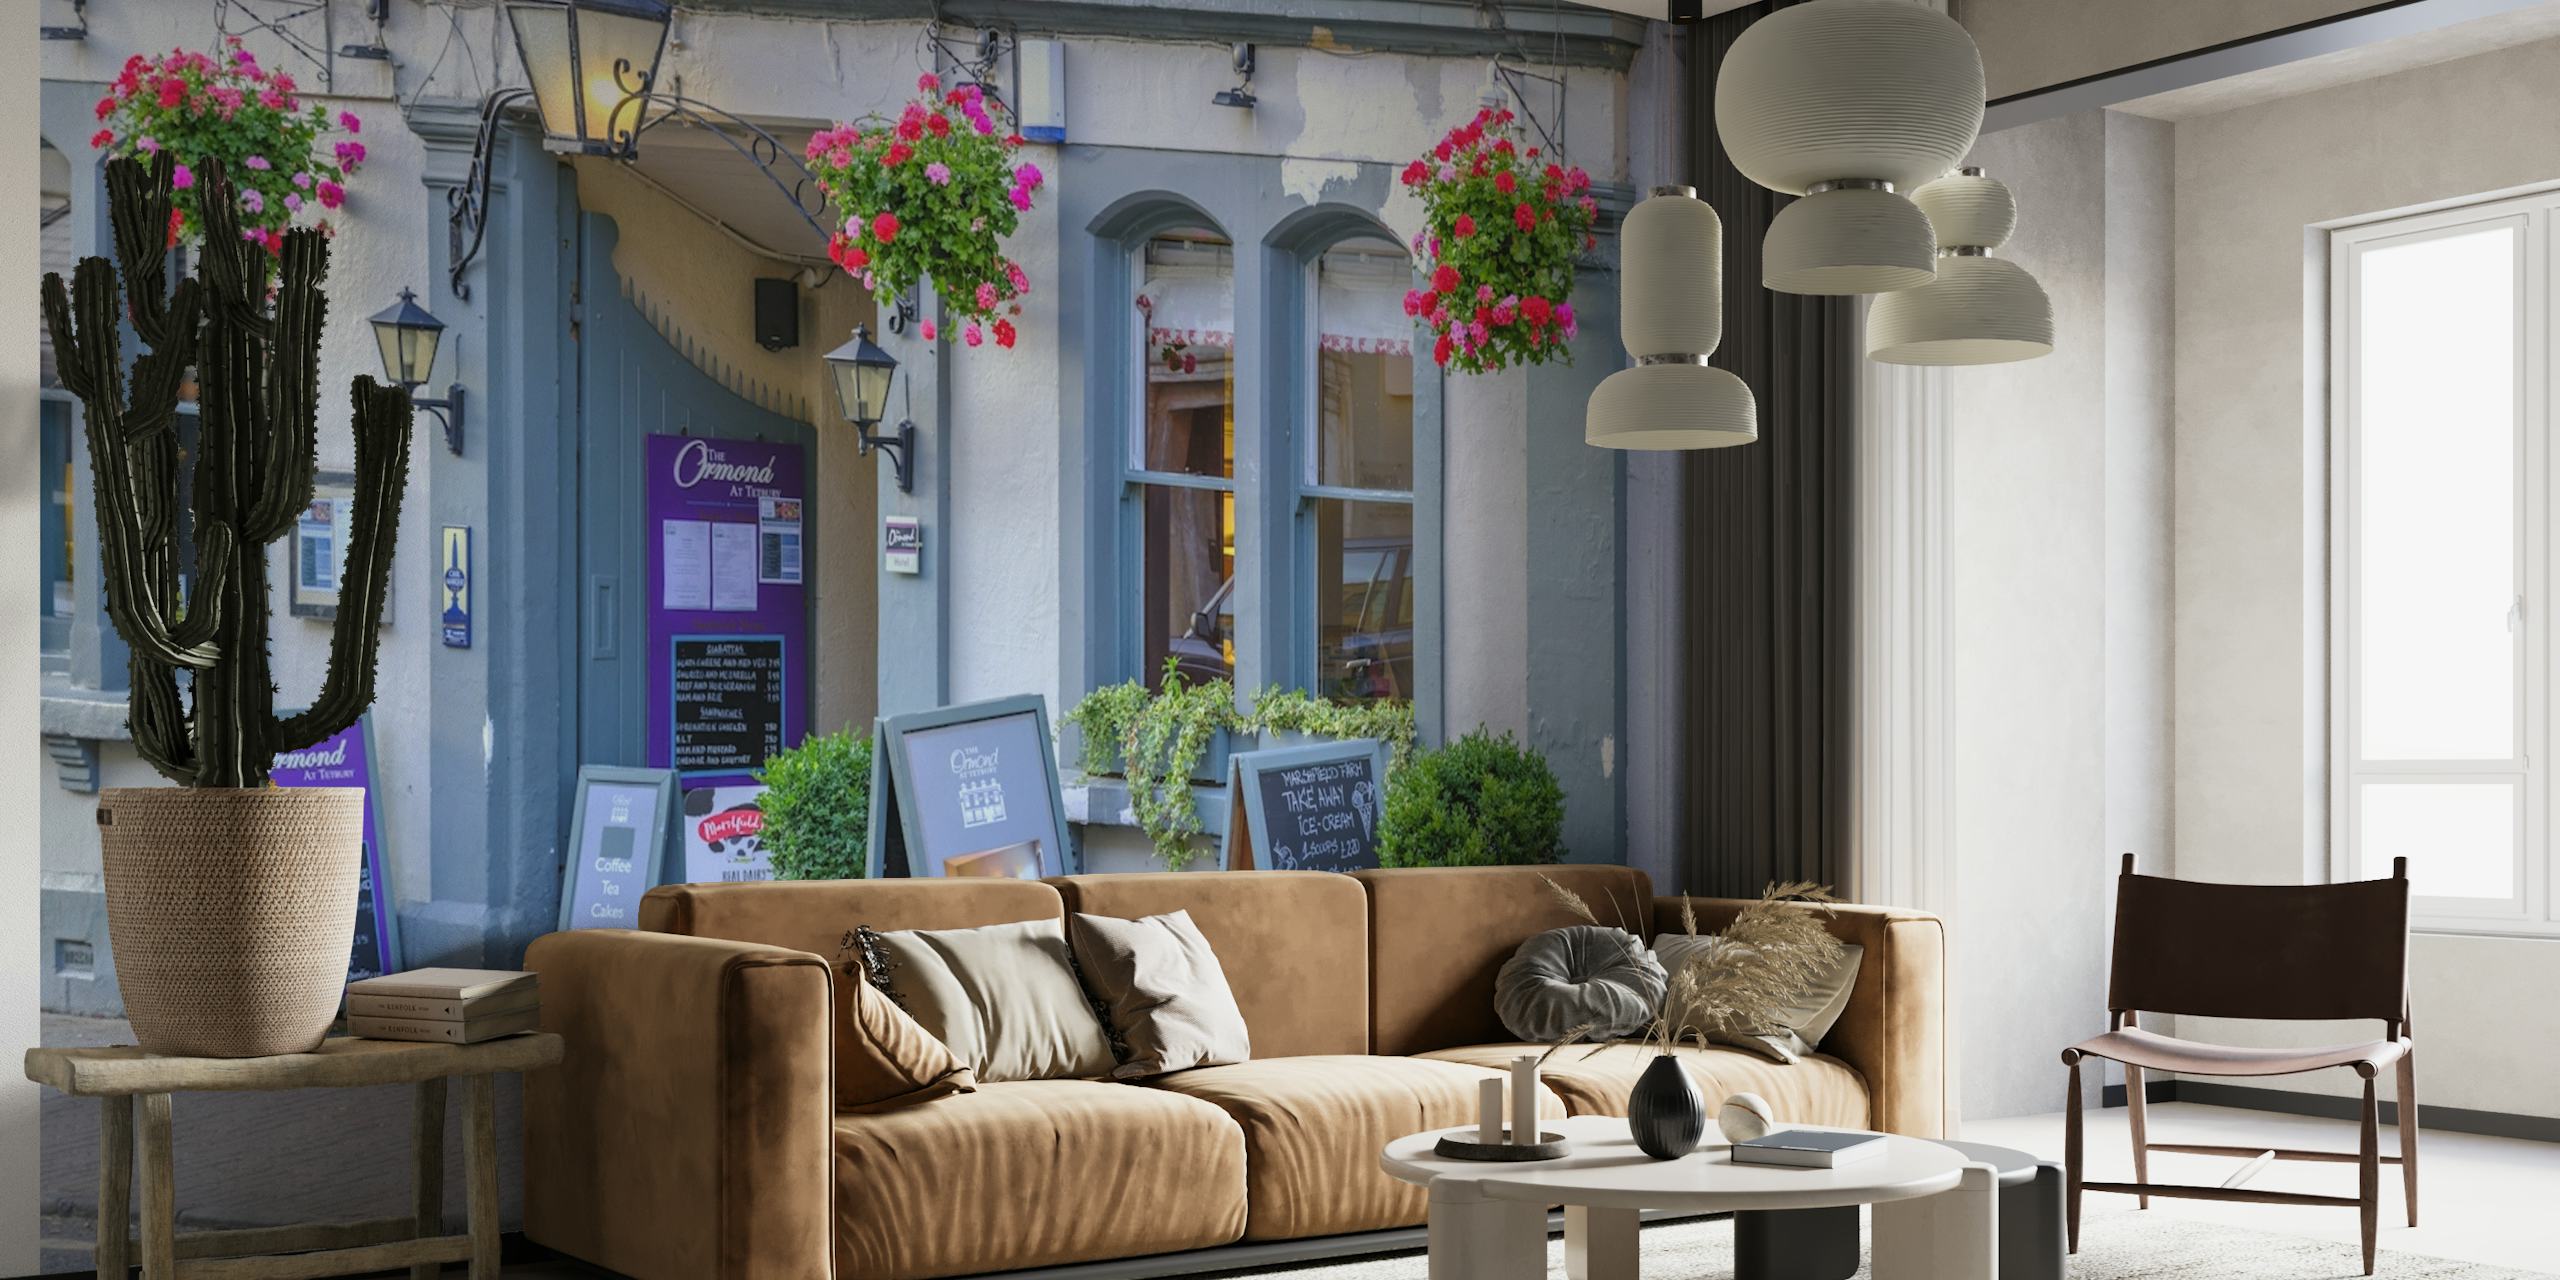 Charmante scène de rue des Cotswolds avec des paniers de fleurs et des boutiques pittoresques